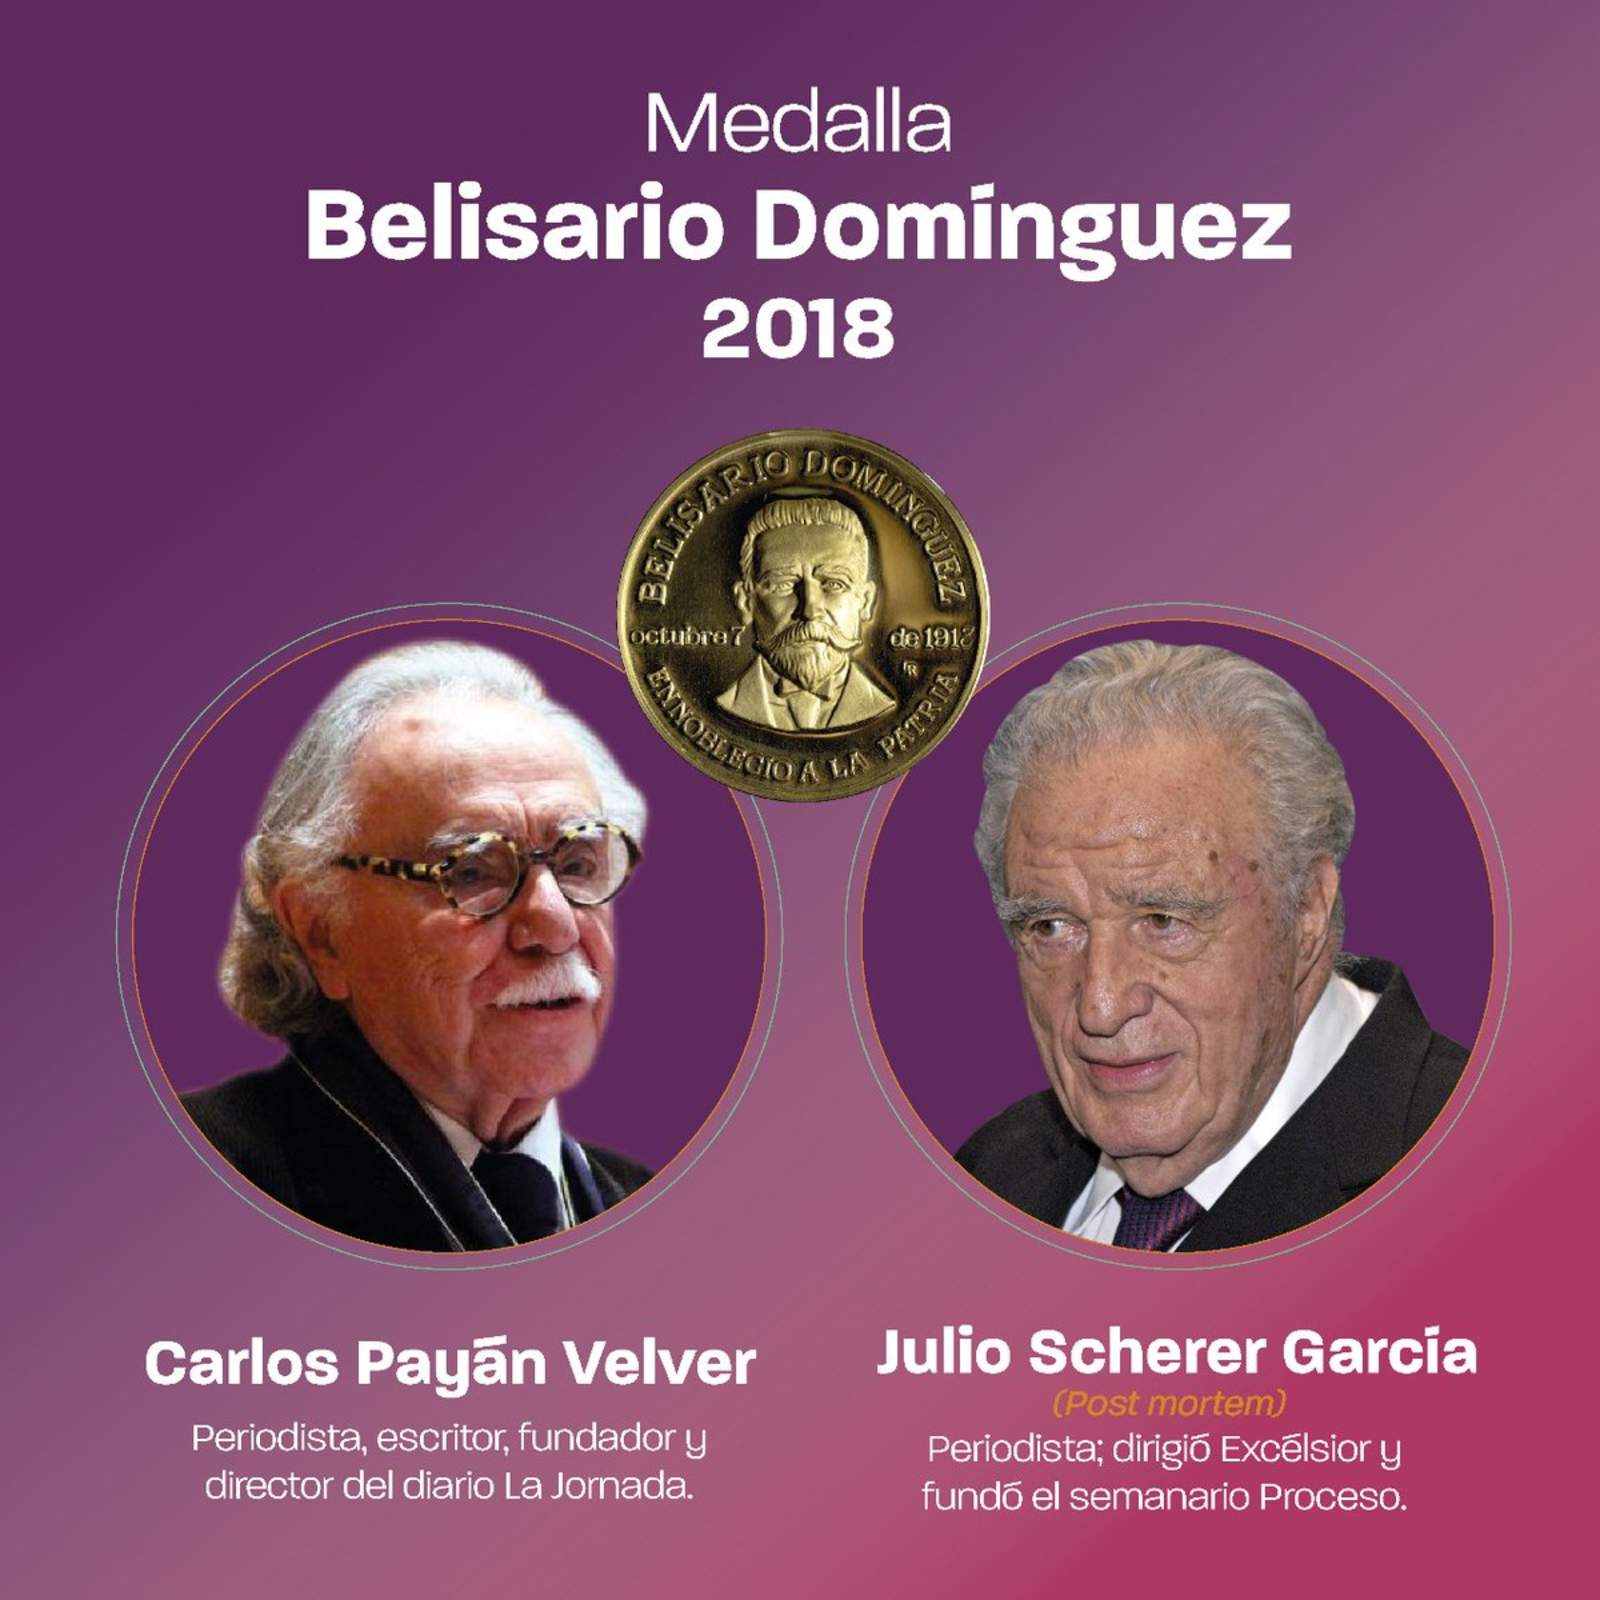 La medalla Belisario Domínguez 2018 fue conferida a los periodistas Carlos Payán Velver y Julio Scherer García (postmortem), y será entregada en sesión solemne del Senado. (ESPECIAL)